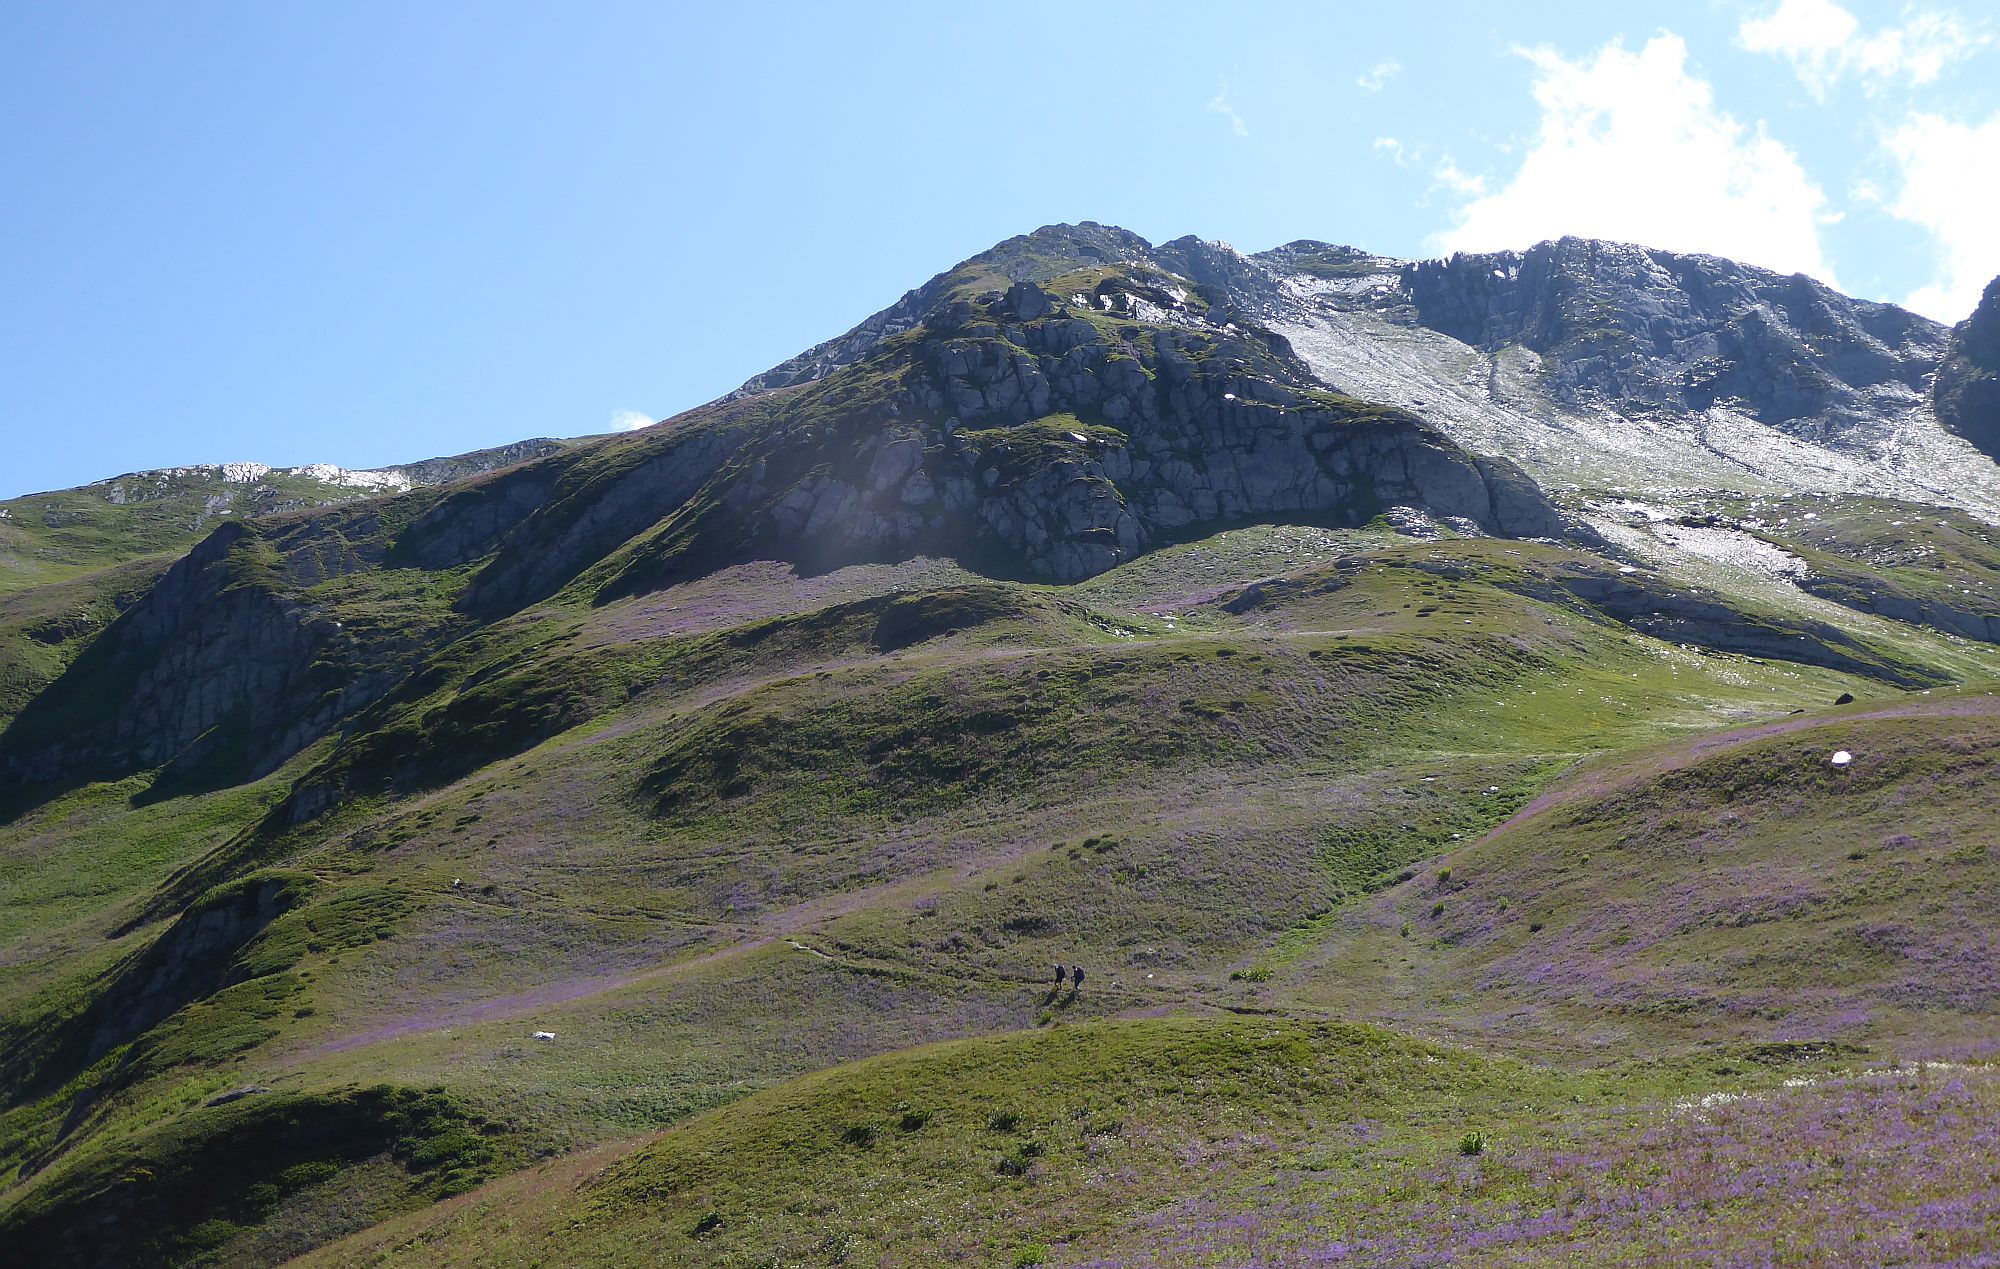 Hiking on the Svaneti ridge